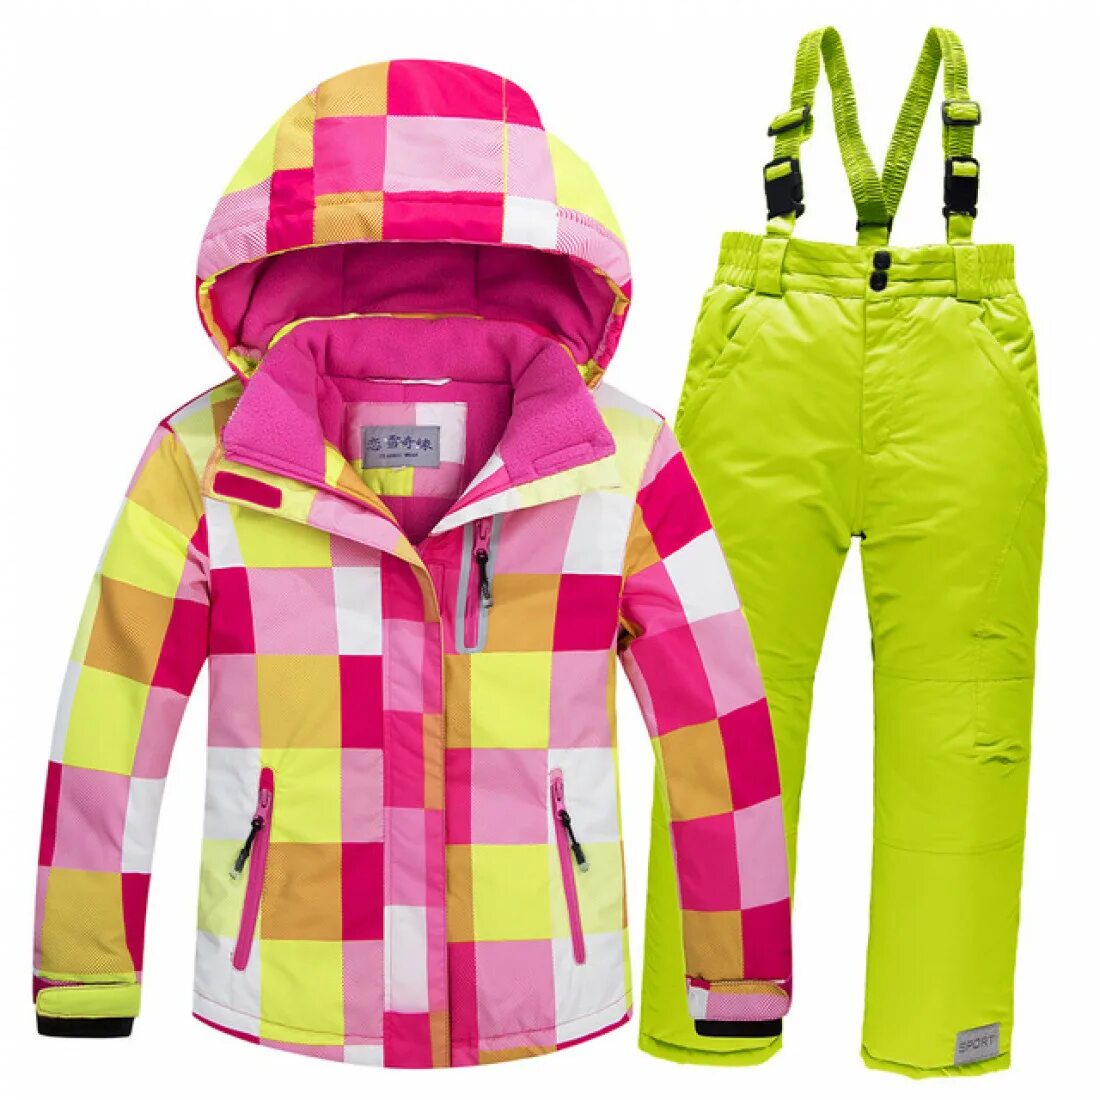 Детские лыжный костюм. Горнолыжный костюм детский dm037-2. Детский горнолыжный костюм Termit для девочки. Лыжный костюм для девочки. Детские горнолыжные костюмы для девочек.